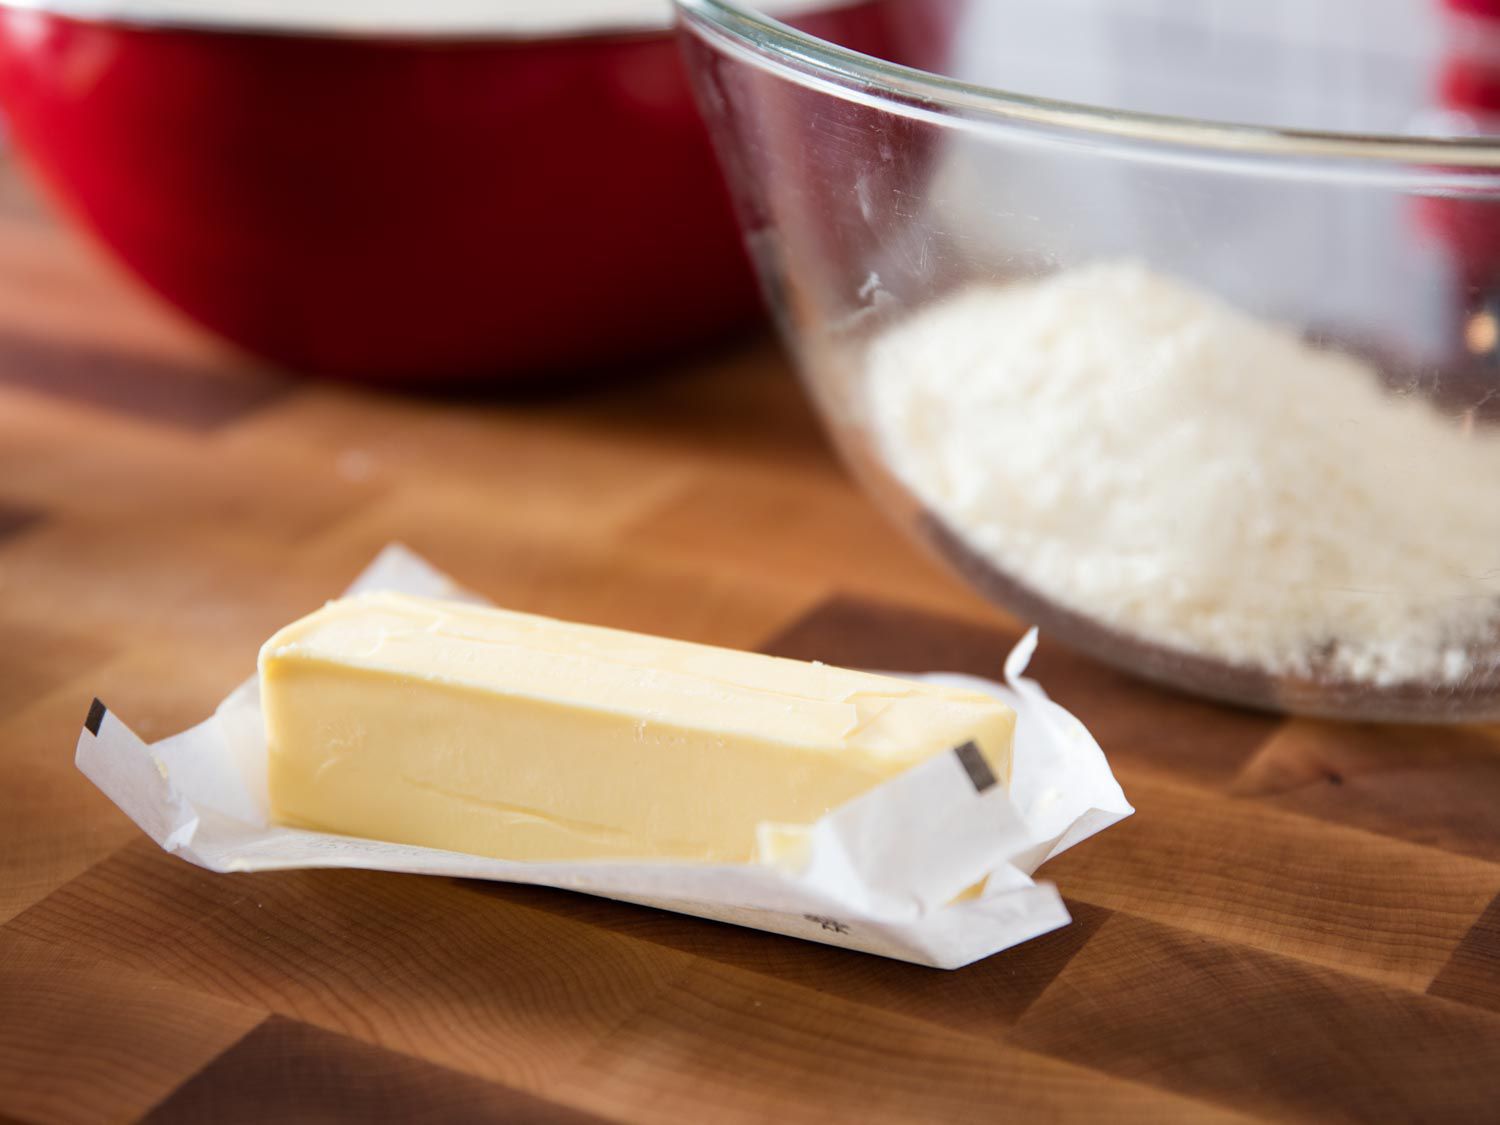 一块没有包装的黄油放在木板上。背景是一碗磨碎的帕尔马干酪。gydF4y2Ba